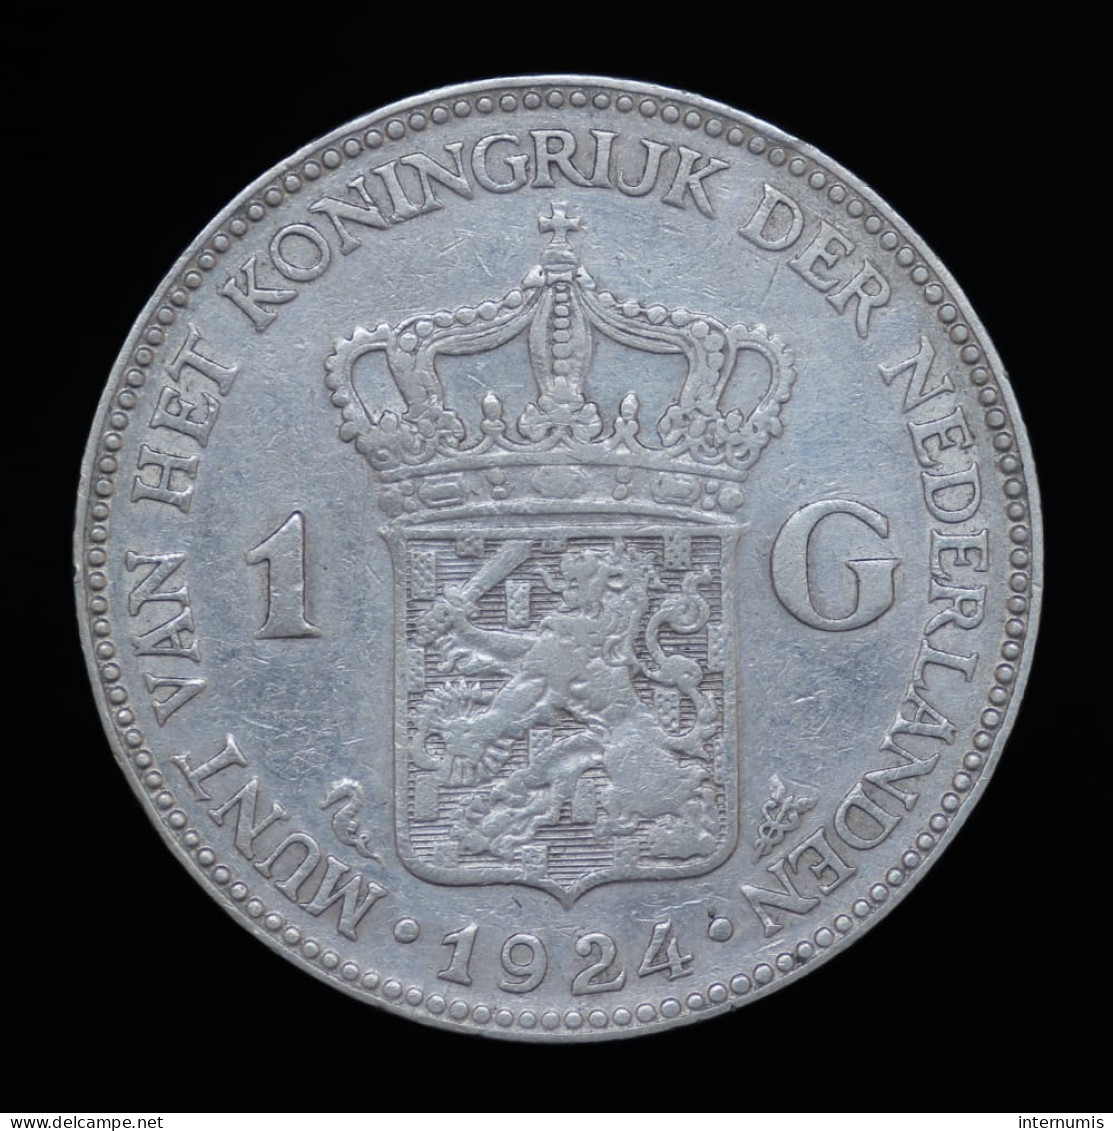 Pays Bas / Netherlands, Wilhelmina, 1 Gulden, 1924, Argent (Silver), TTB (EF), KM#161.1 - 1 Gulden